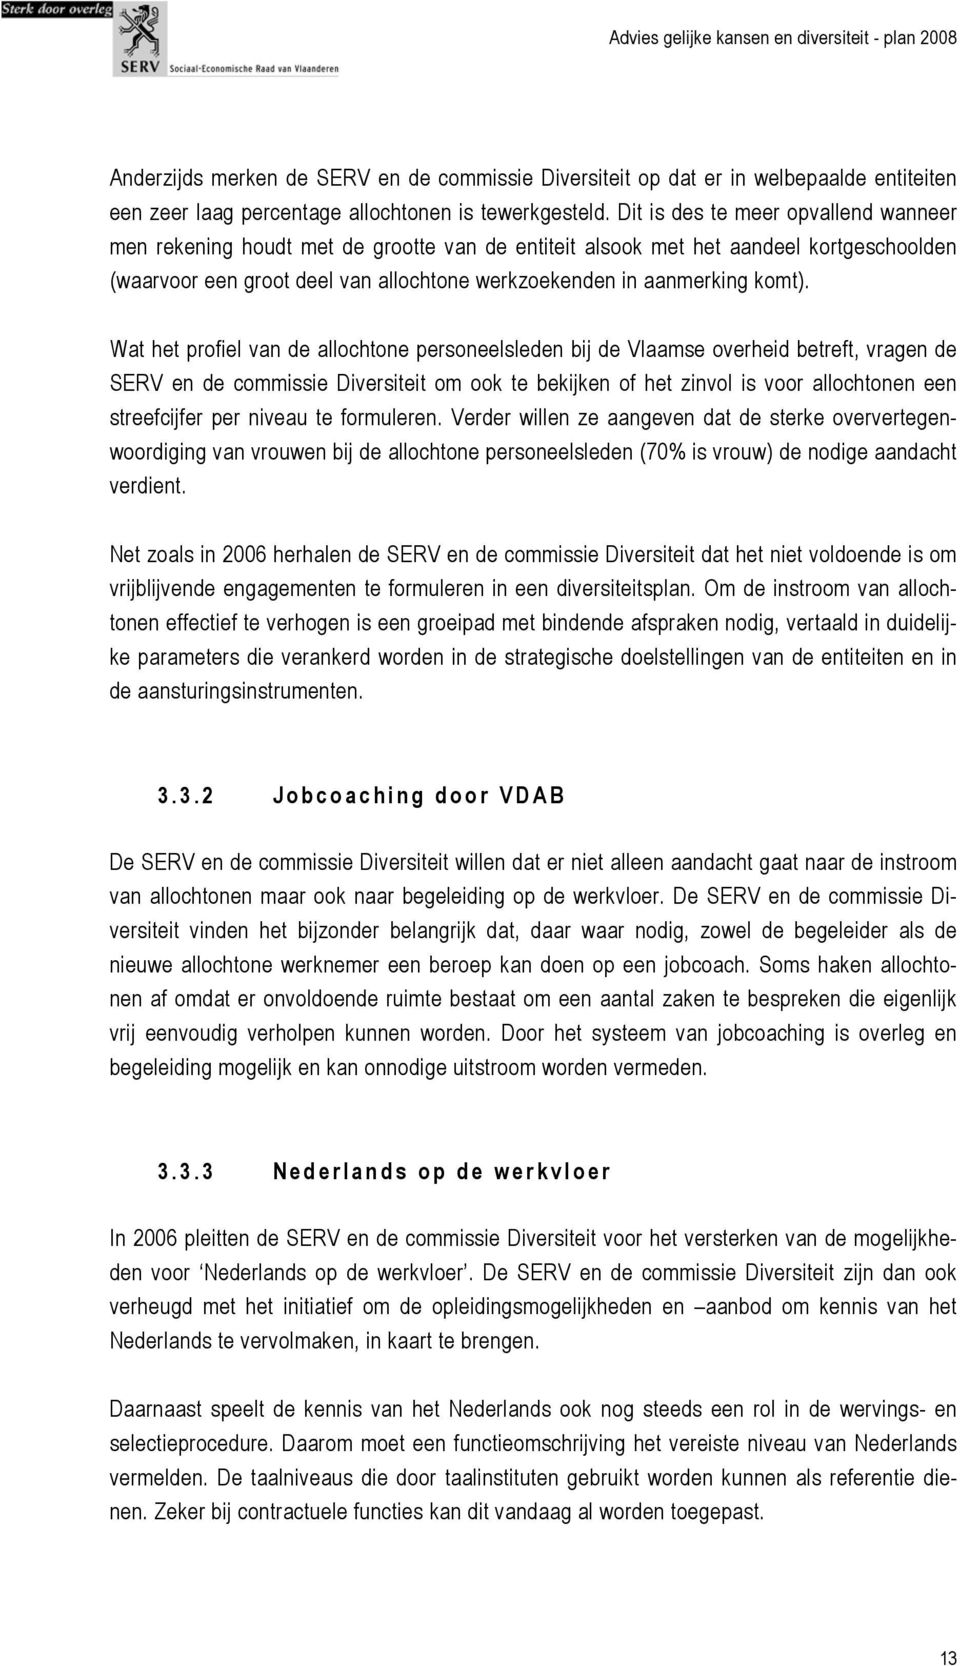 Wat het profiel van de allochtone personeelsleden bij de Vlaamse overheid betreft, vragen de SERV en de commissie Diversiteit om ook te bekijken of het zinvol is voor allochtonen een streefcijfer per